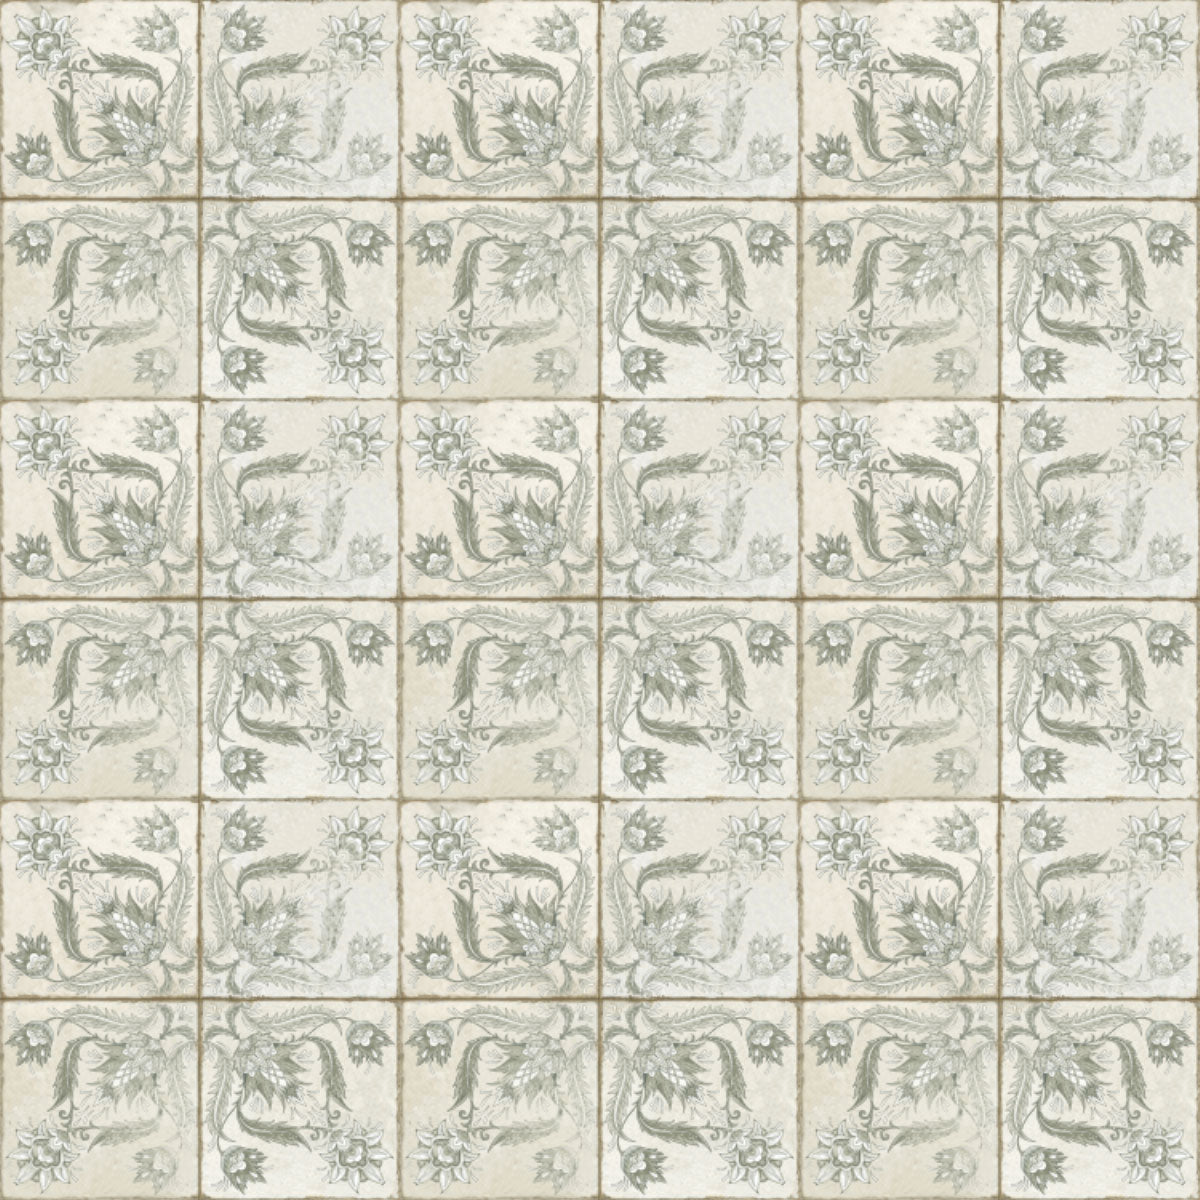 FS Ivy Sage Natural Tile 45 x 45cm